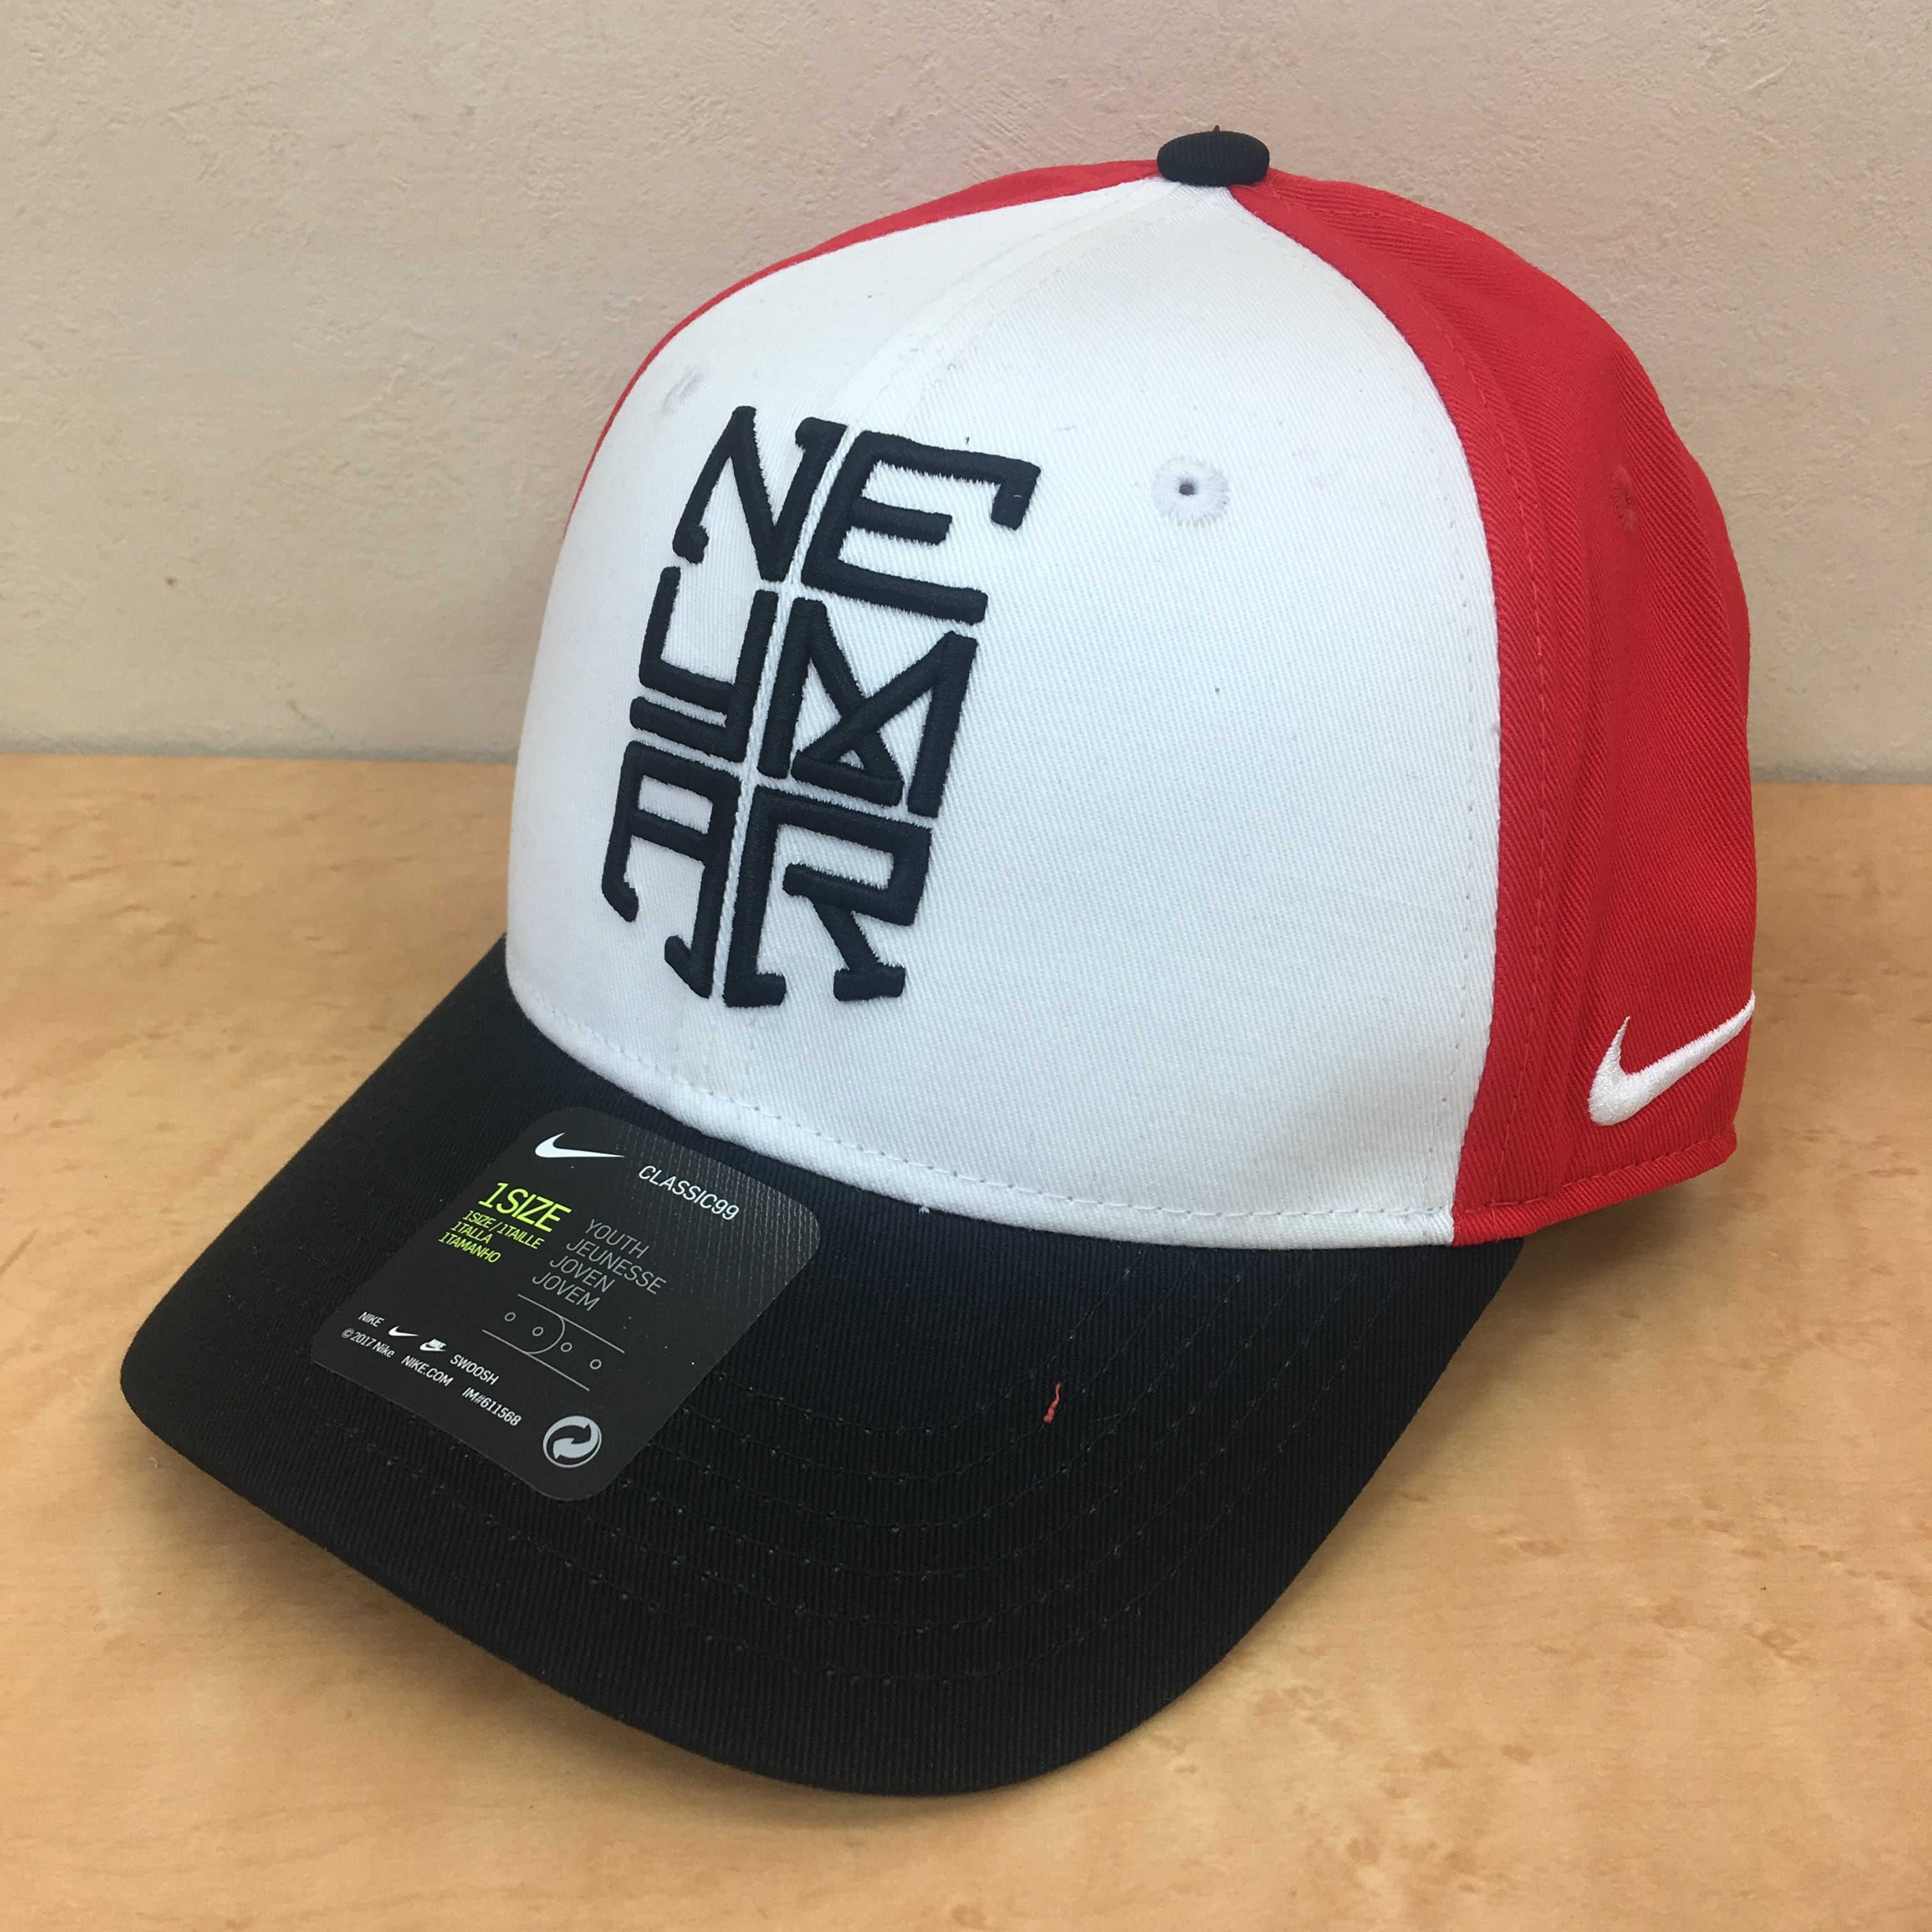 Nike ナイキ Neymar ネイマール Shhh スナップバックキャップ ジュニアサイズ Freak スポーツウェア通販 海外ブランド 日本国内未入荷 海外直輸入